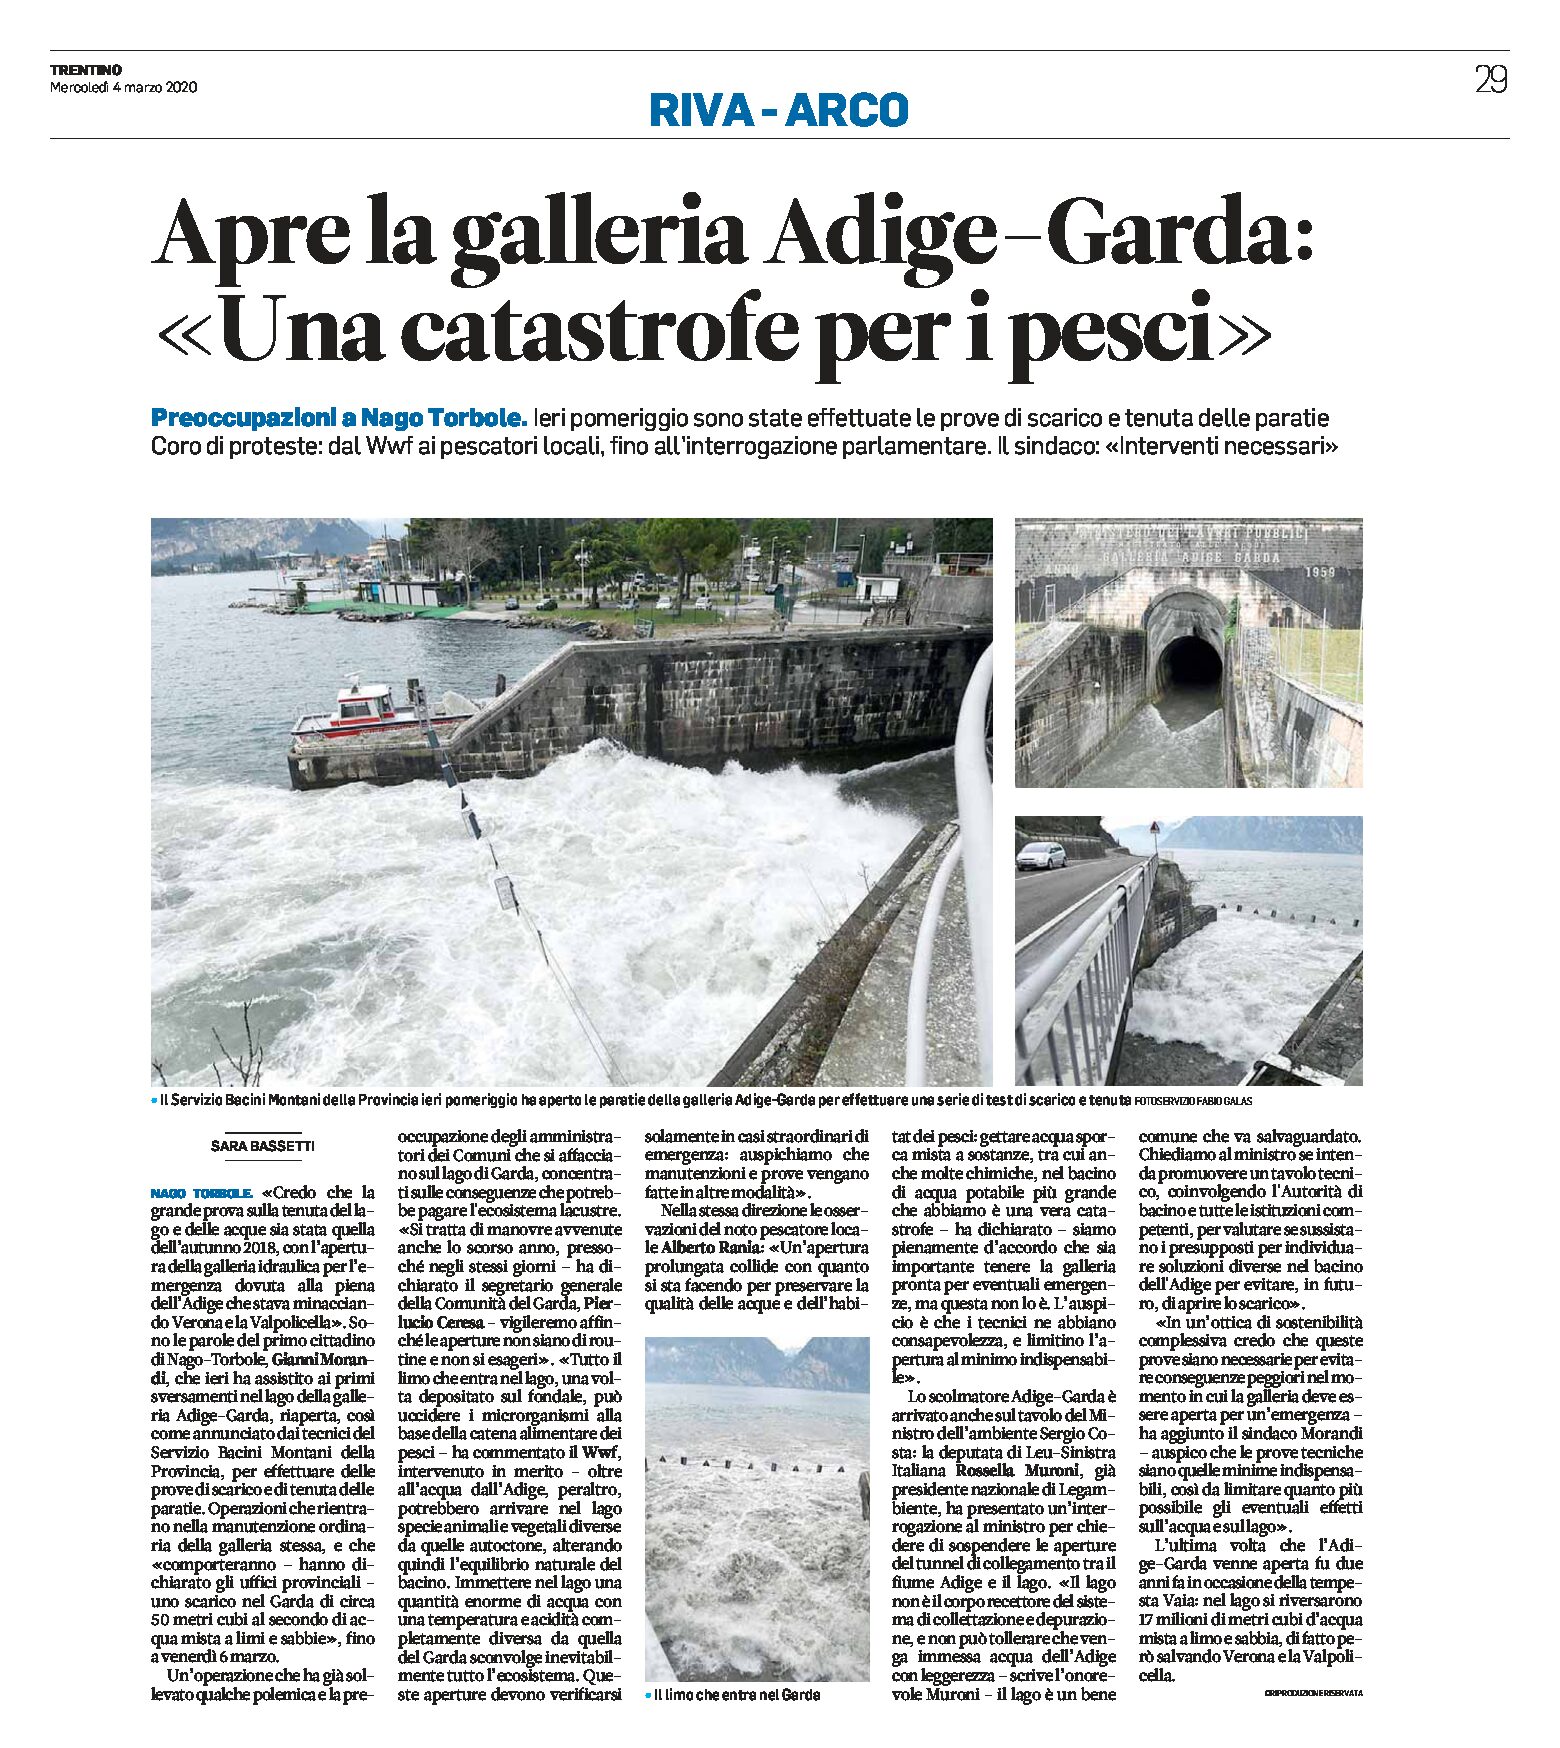 Nago Torbole: apre la galleria Adige-Garda. Coro di proteste “una catastrofe per i pesci”